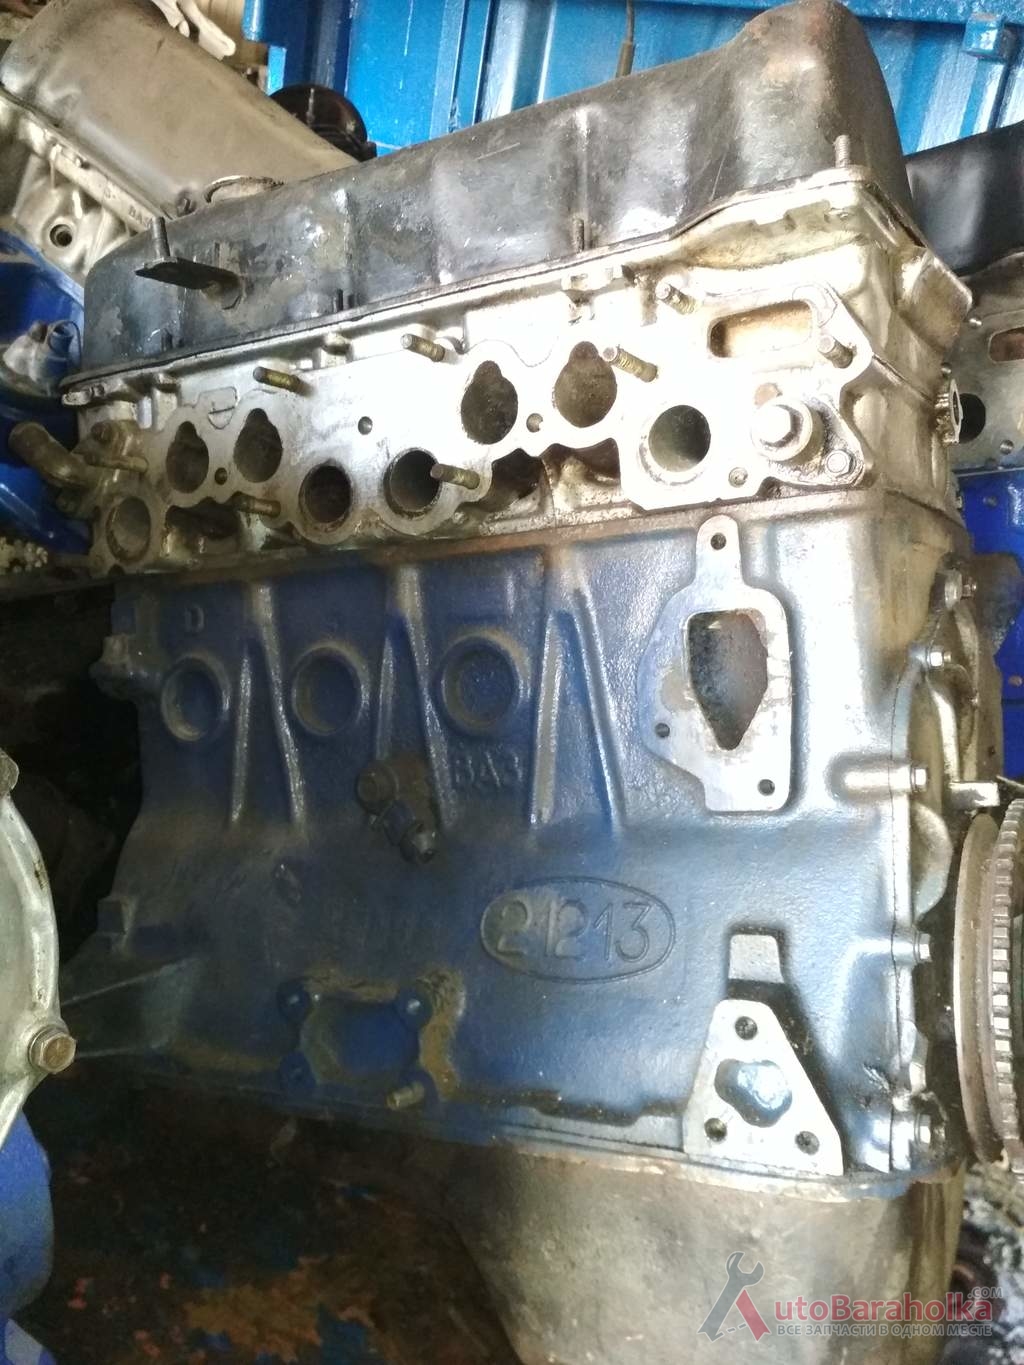 Продам Двигатель ВАЗ 21213 нива из Польши Германии. без пробега по Украине. в отличном состоянии. Гарантия Харьков 